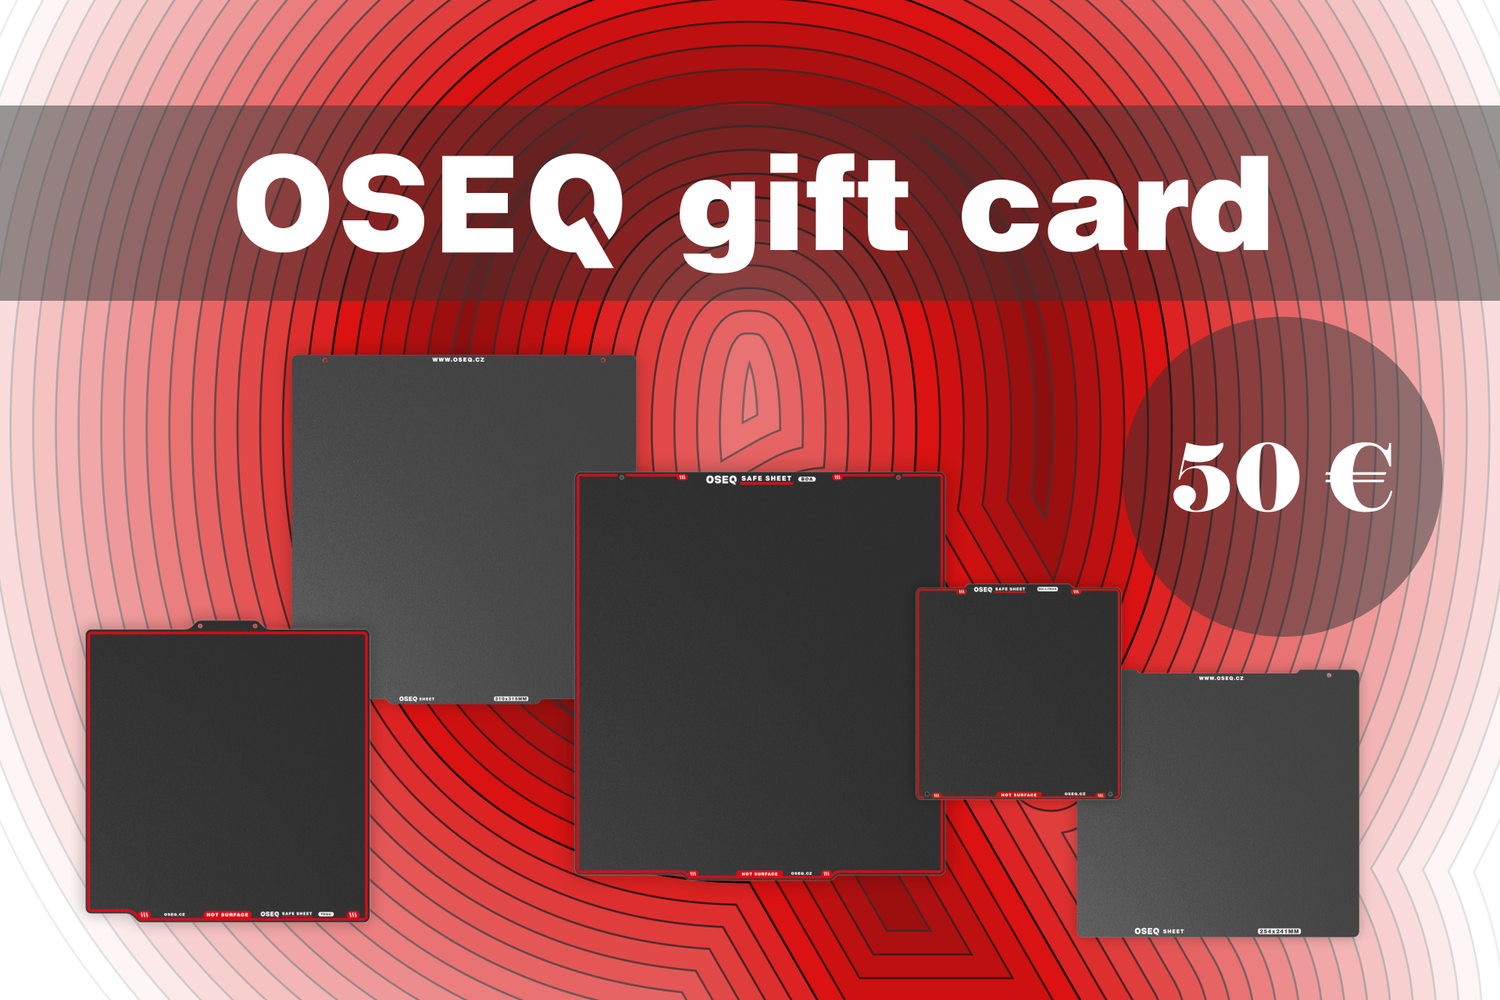 OSEQ gift card - OSEQ-  OSEQ